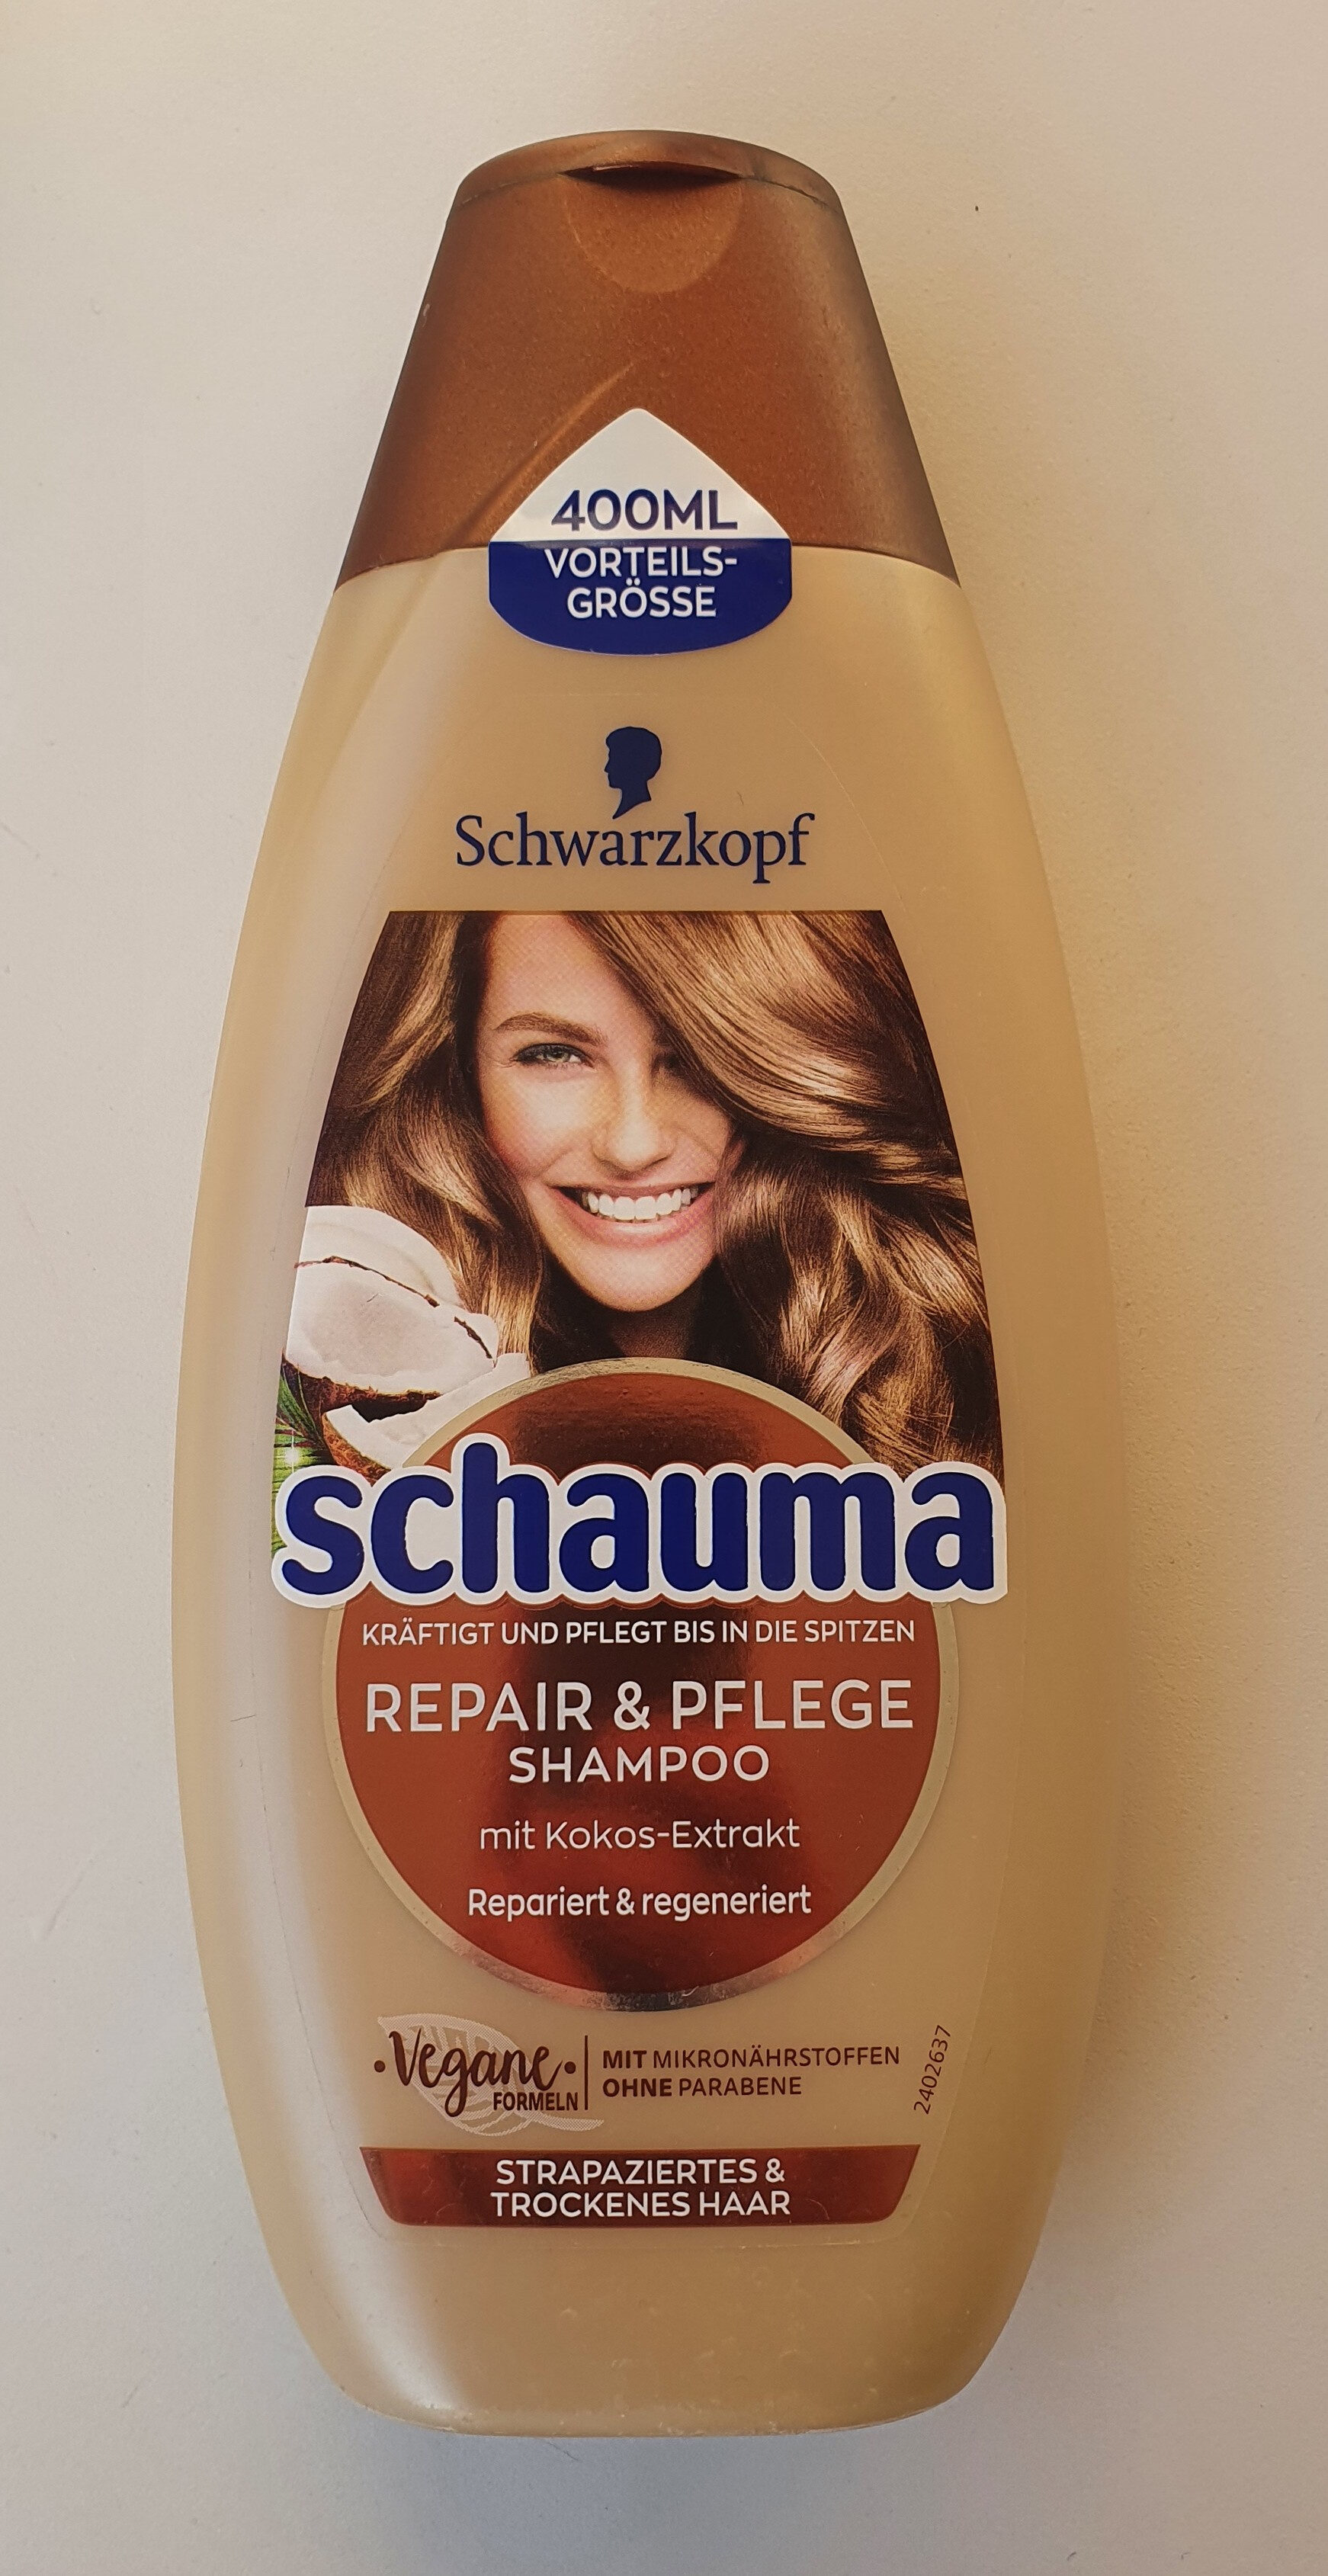 Repair & Pflege Shampoo mit Kokos-Extrakt - Produkt - de